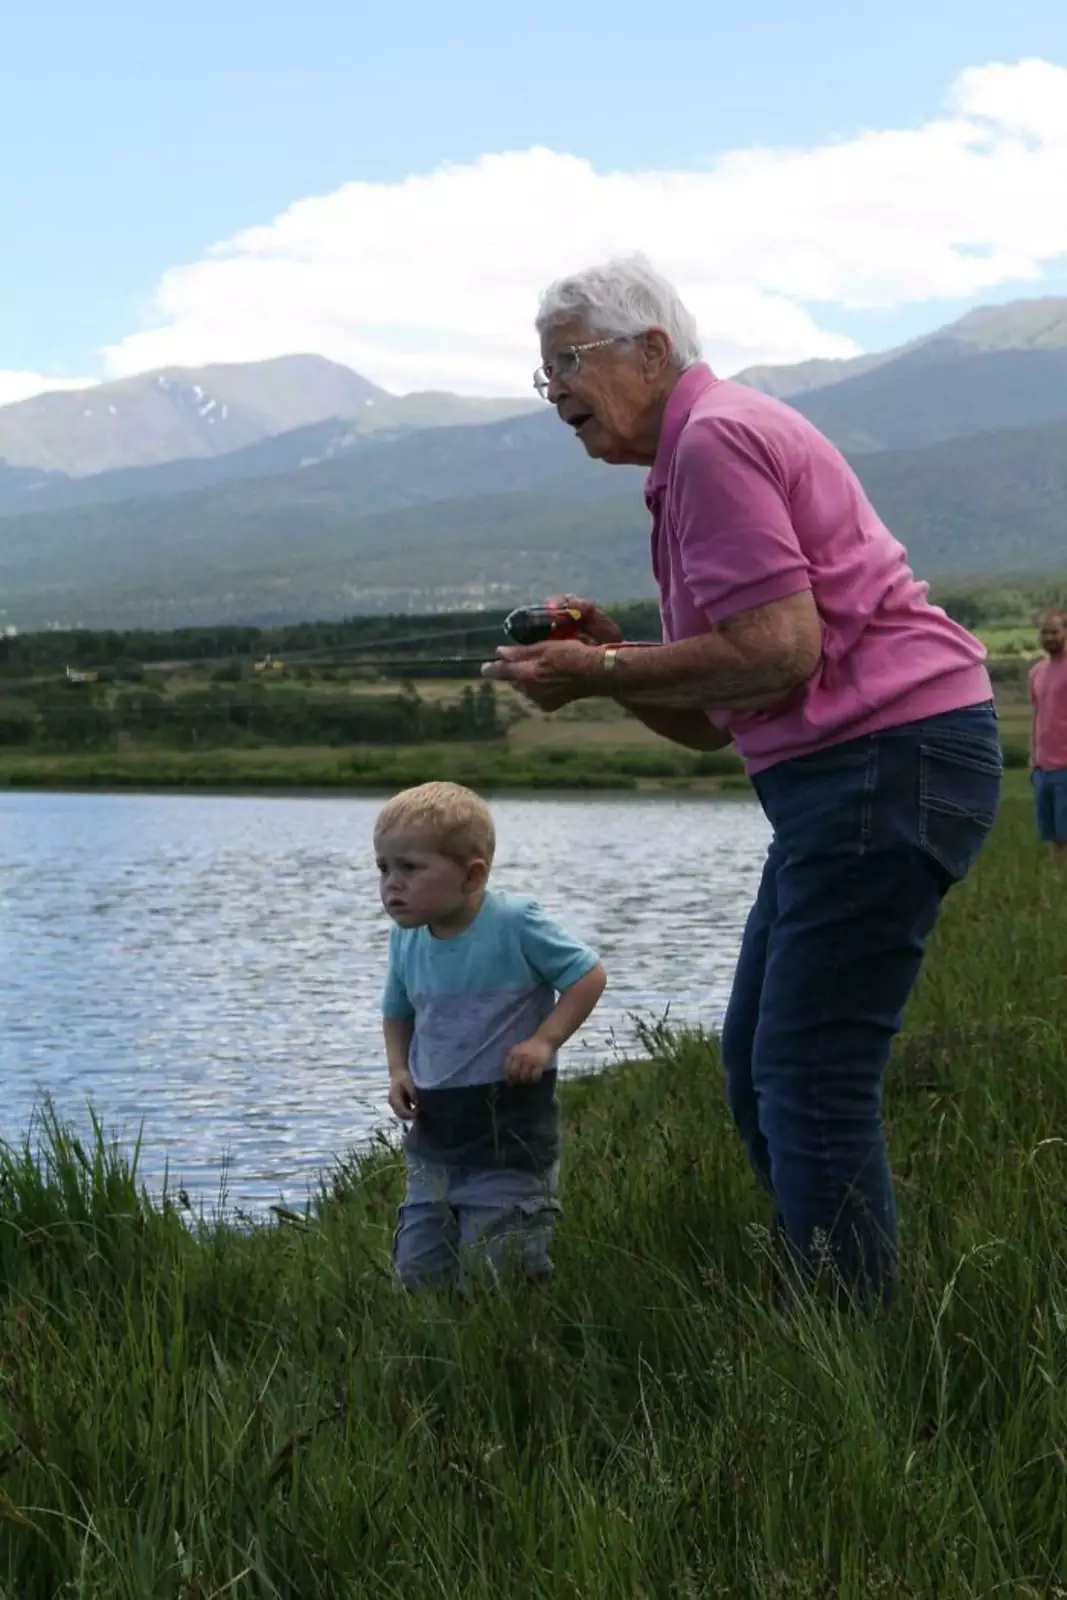 "Сегодня мой 3-летний сын и его 89-летняя прабабушка объединились, чтобы поймать свою первую рыбу. Он зацепил это, она намотала это".